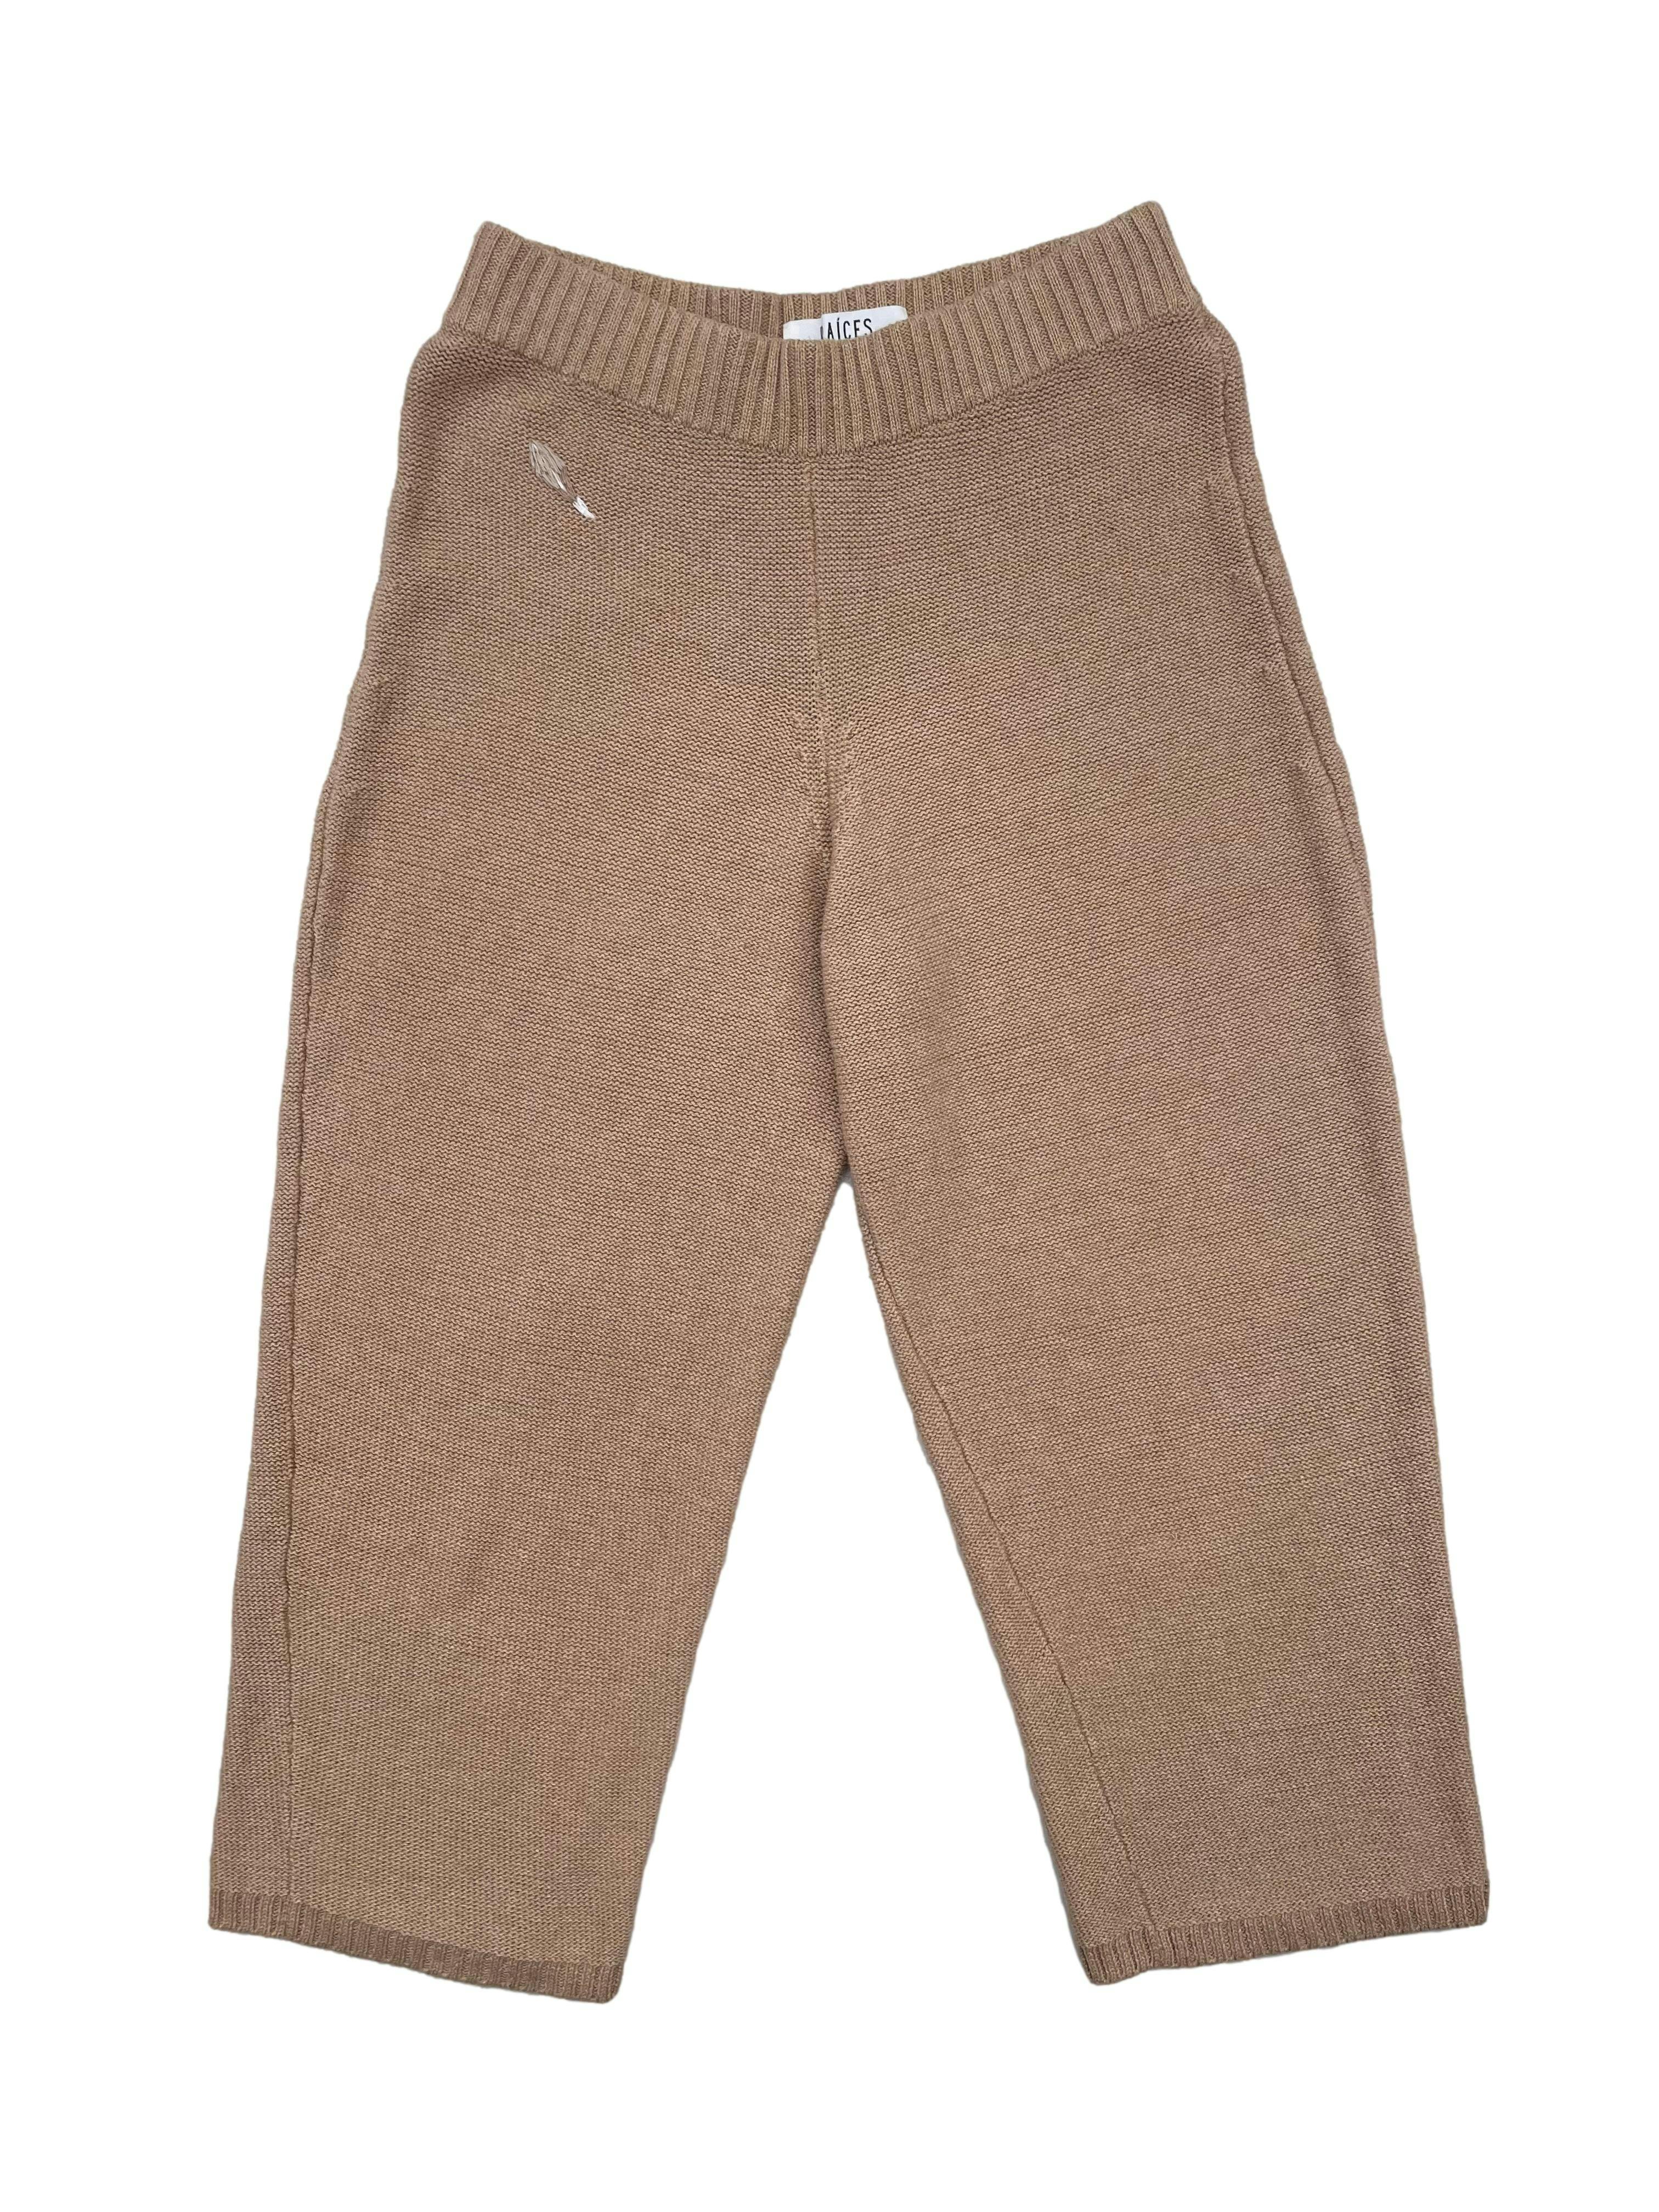 Pantalón culotte Raíces, tejido camel de algodón orgánico con bordado frontal. Cintura 64cm, Largo 80cm.